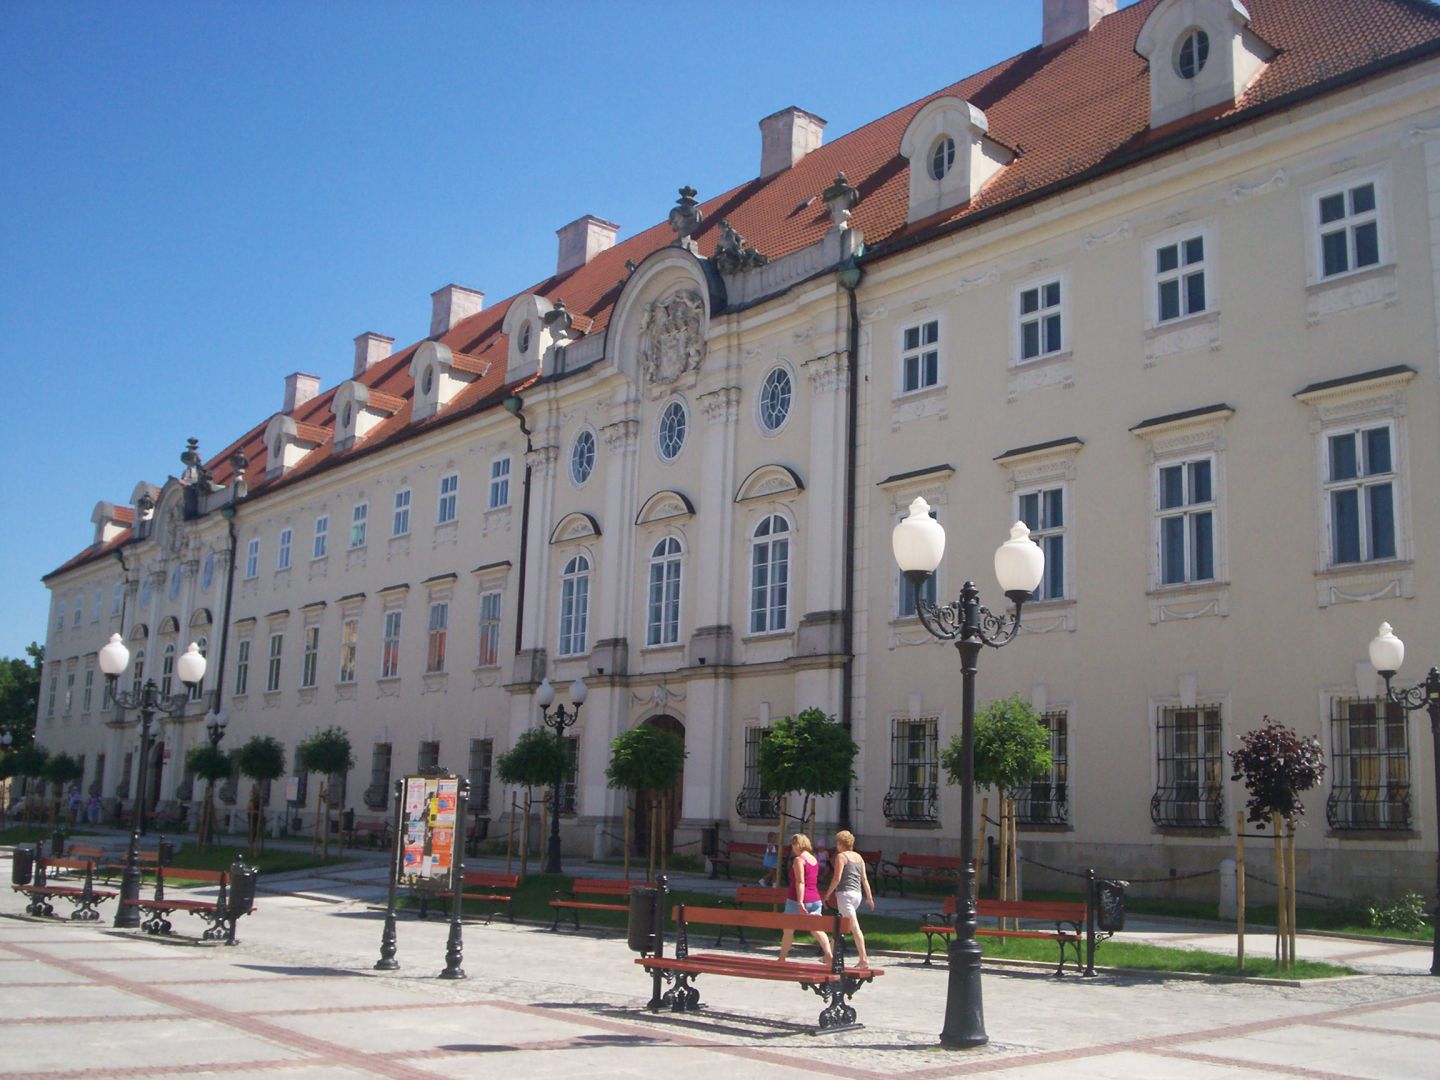 Schaffgotsch Palace